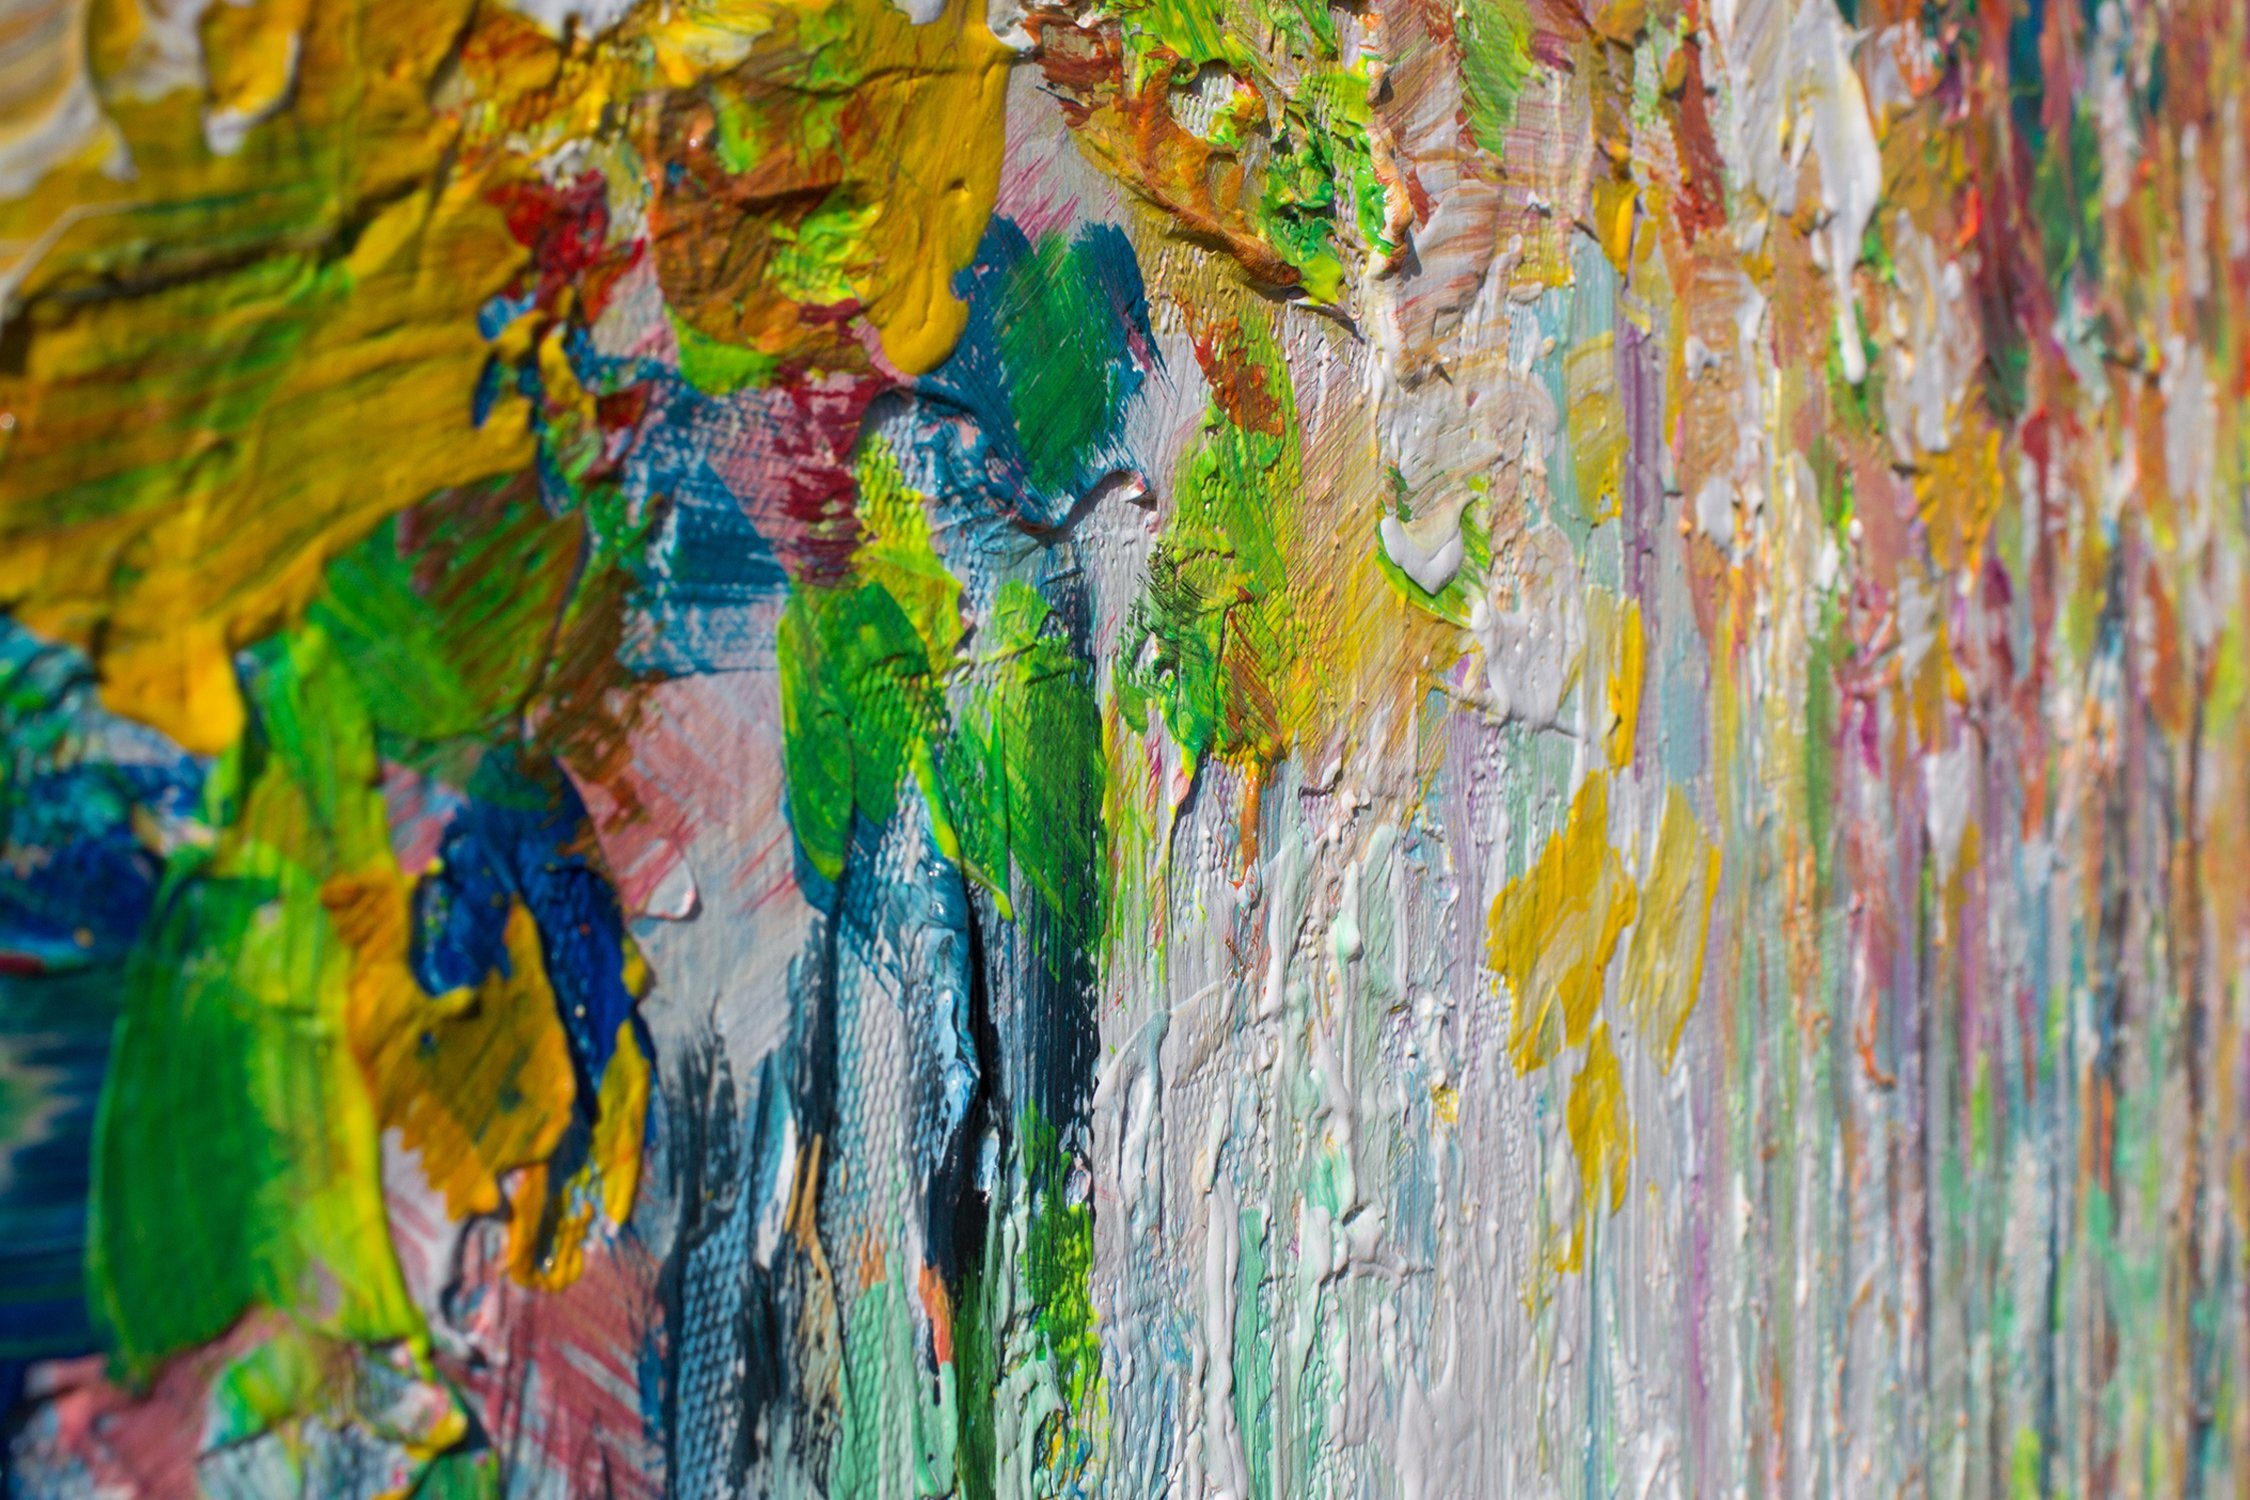 YS-Art Gemälde Baum Herbstlicher Landschaft, Ohne Bild Segelboote Schattenfugenrahmen Handgemalt Anlegeplatz, Leinwand Bunt